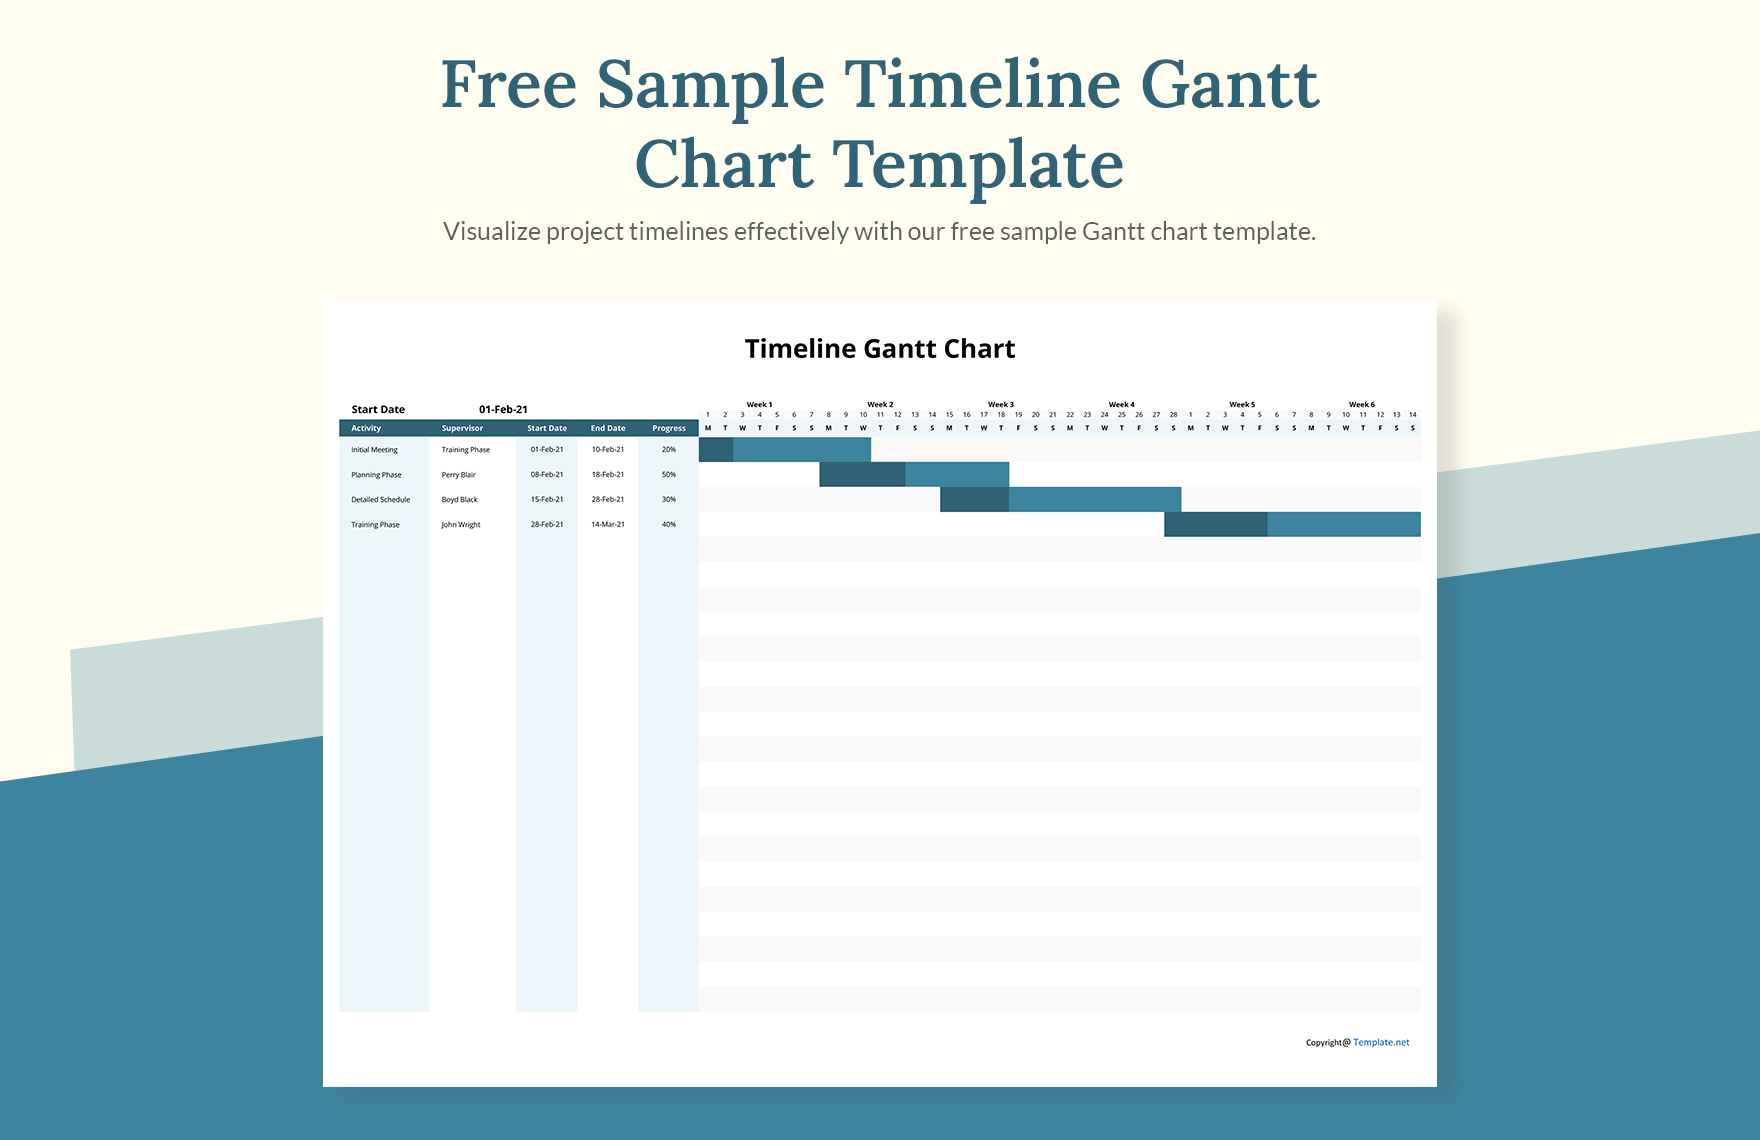 Sample Timeline Gantt Chart Template